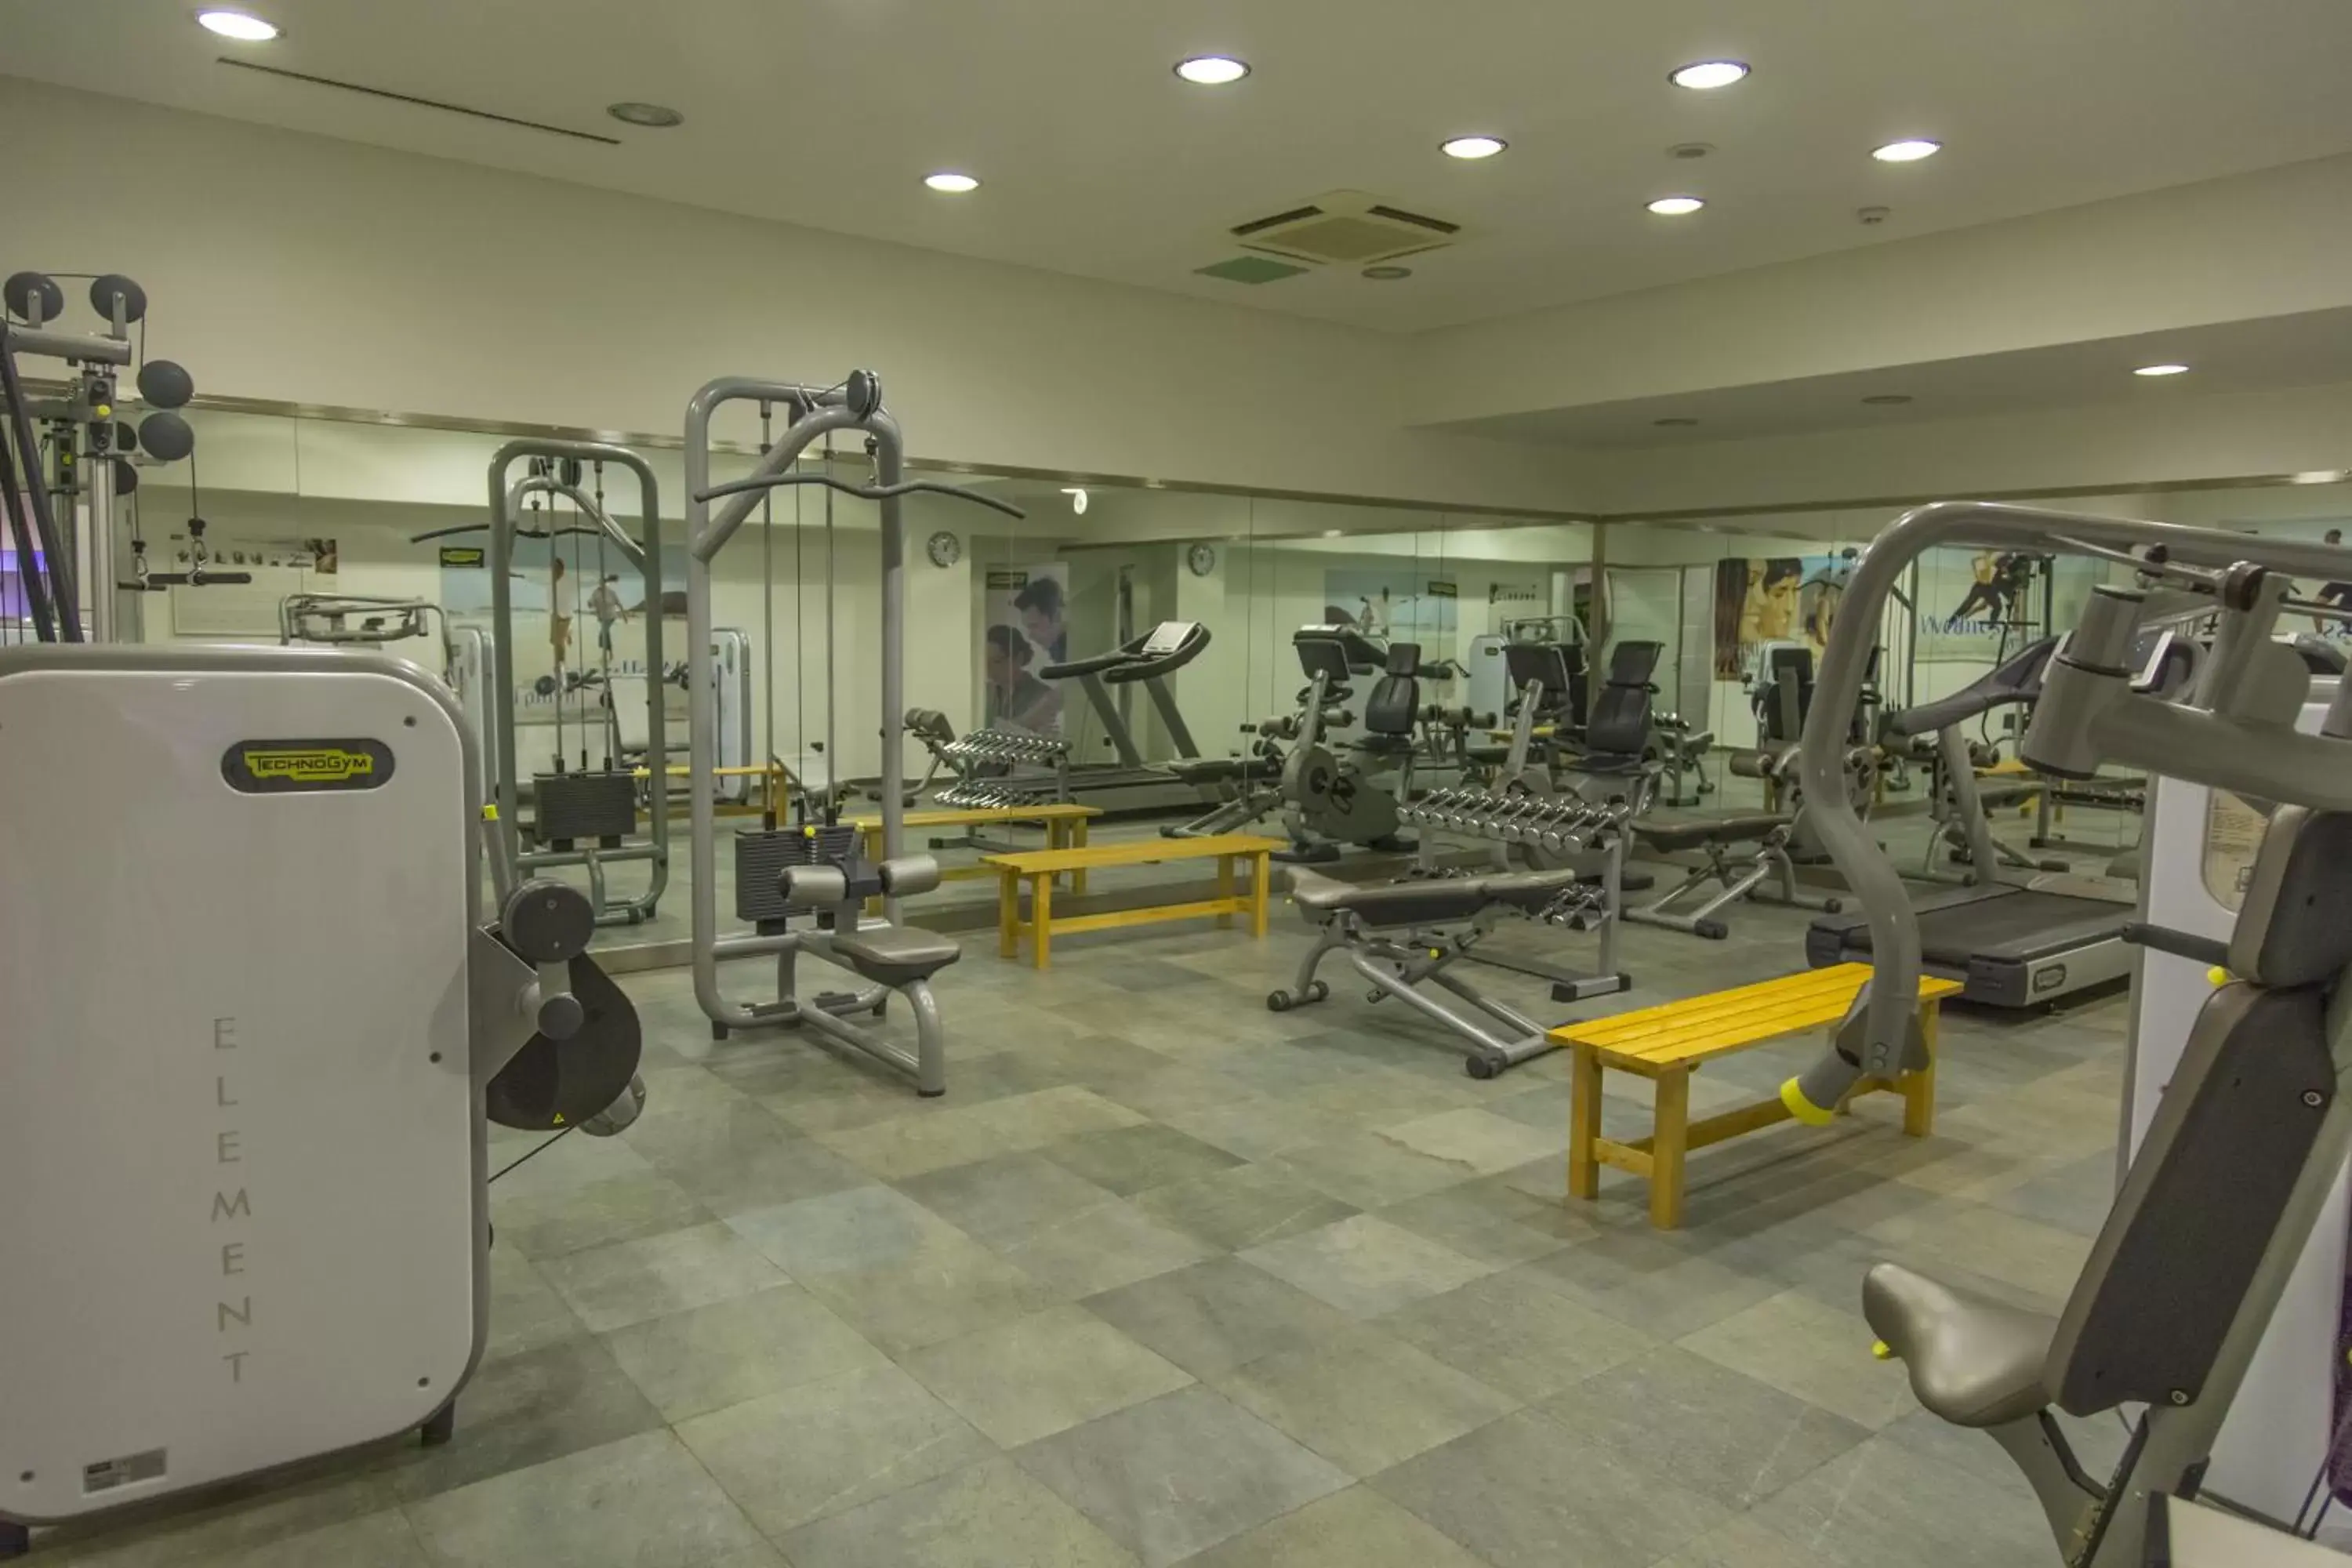 Fitness centre/facilities, Fitness Center/Facilities in Hotel Futura Centro Congressi